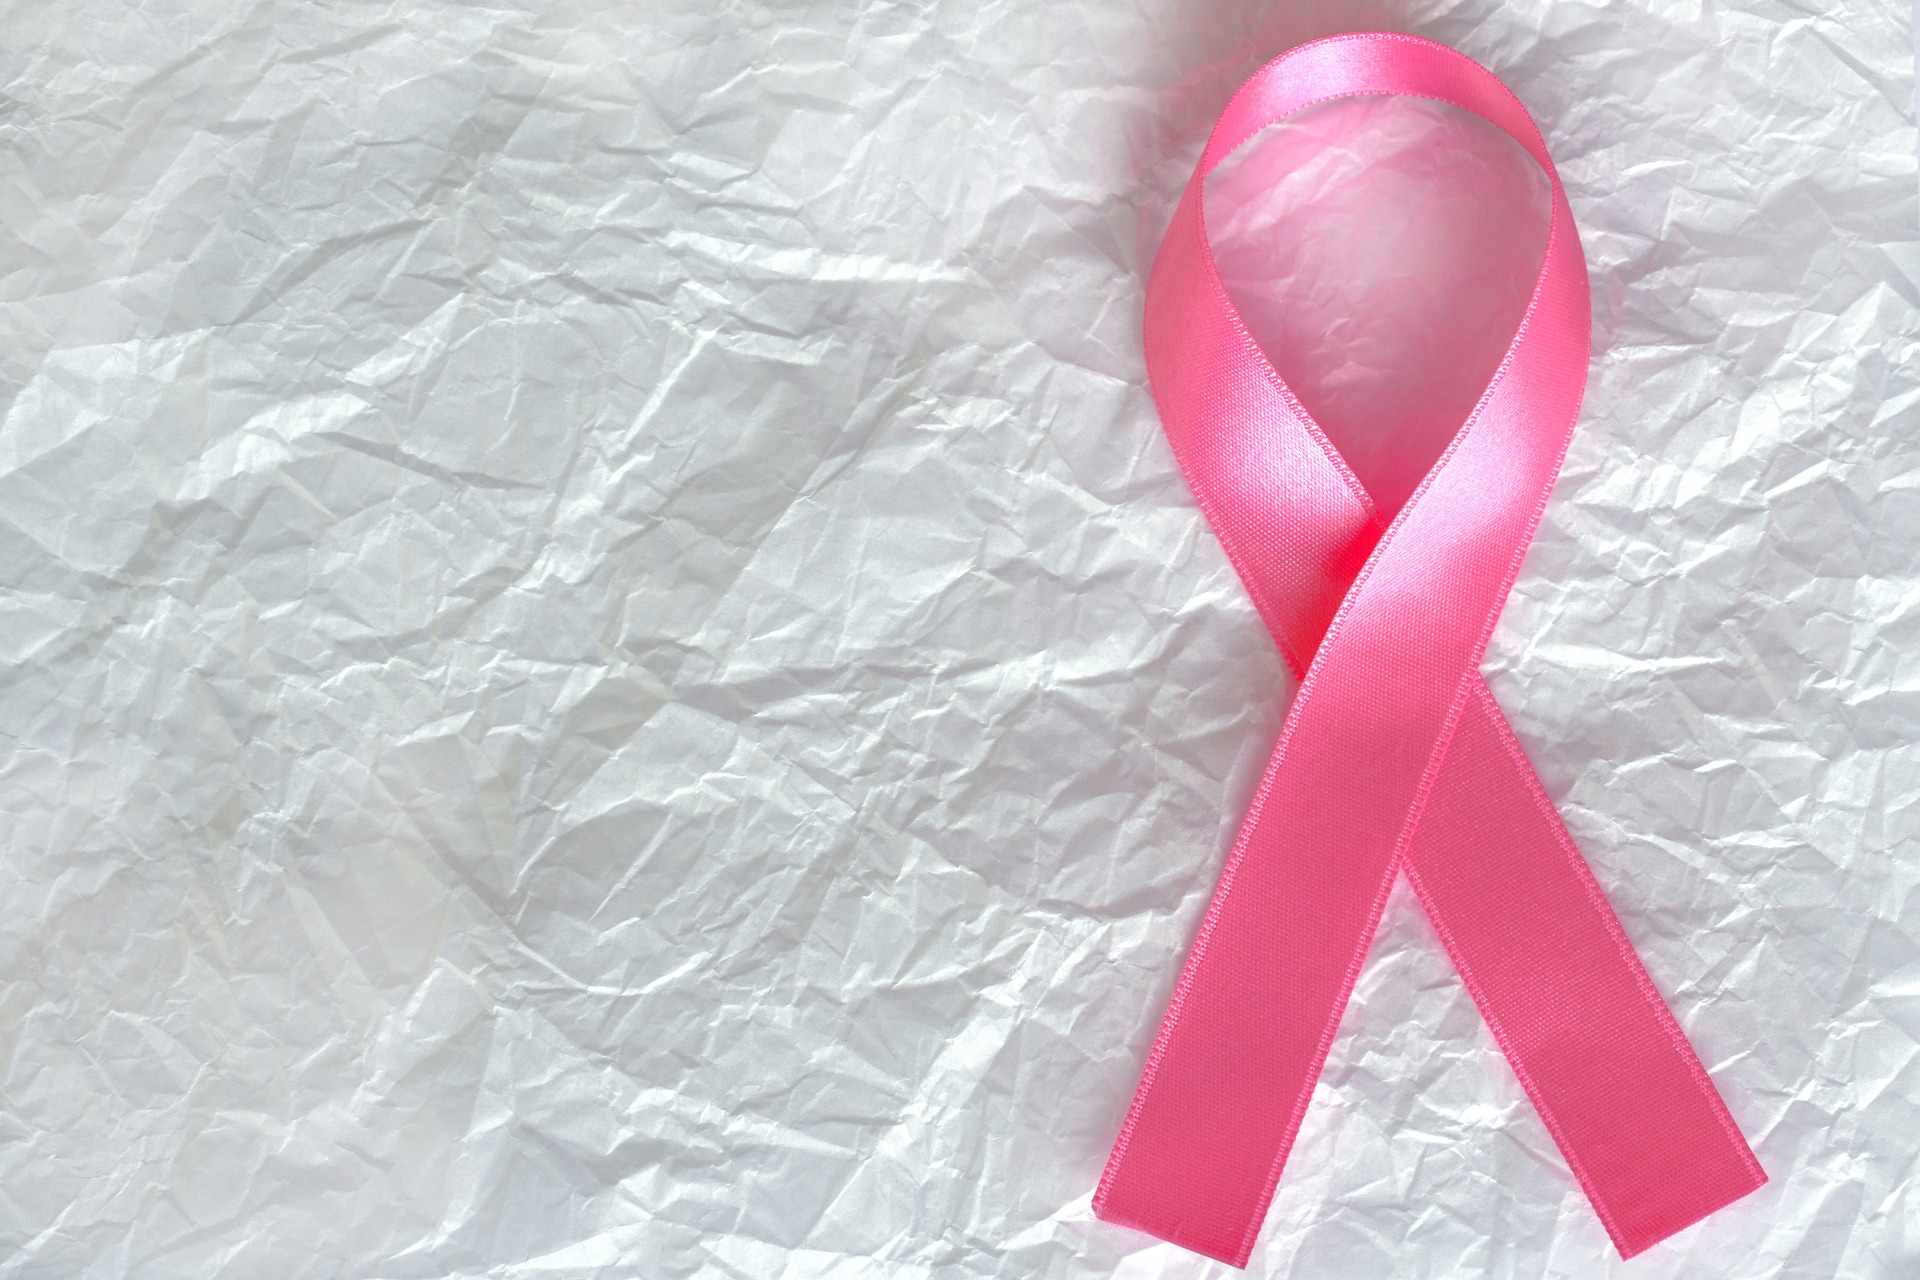 Rak piersi to najczęstszy kobiecy nowotwór złośliwy. Dotyka najczęściej kobiet w wieku pomenopauzalnym, ale aż ok. 10% rozpoznań dotyczy pacjentek <45rż (głównie 35-45rż).